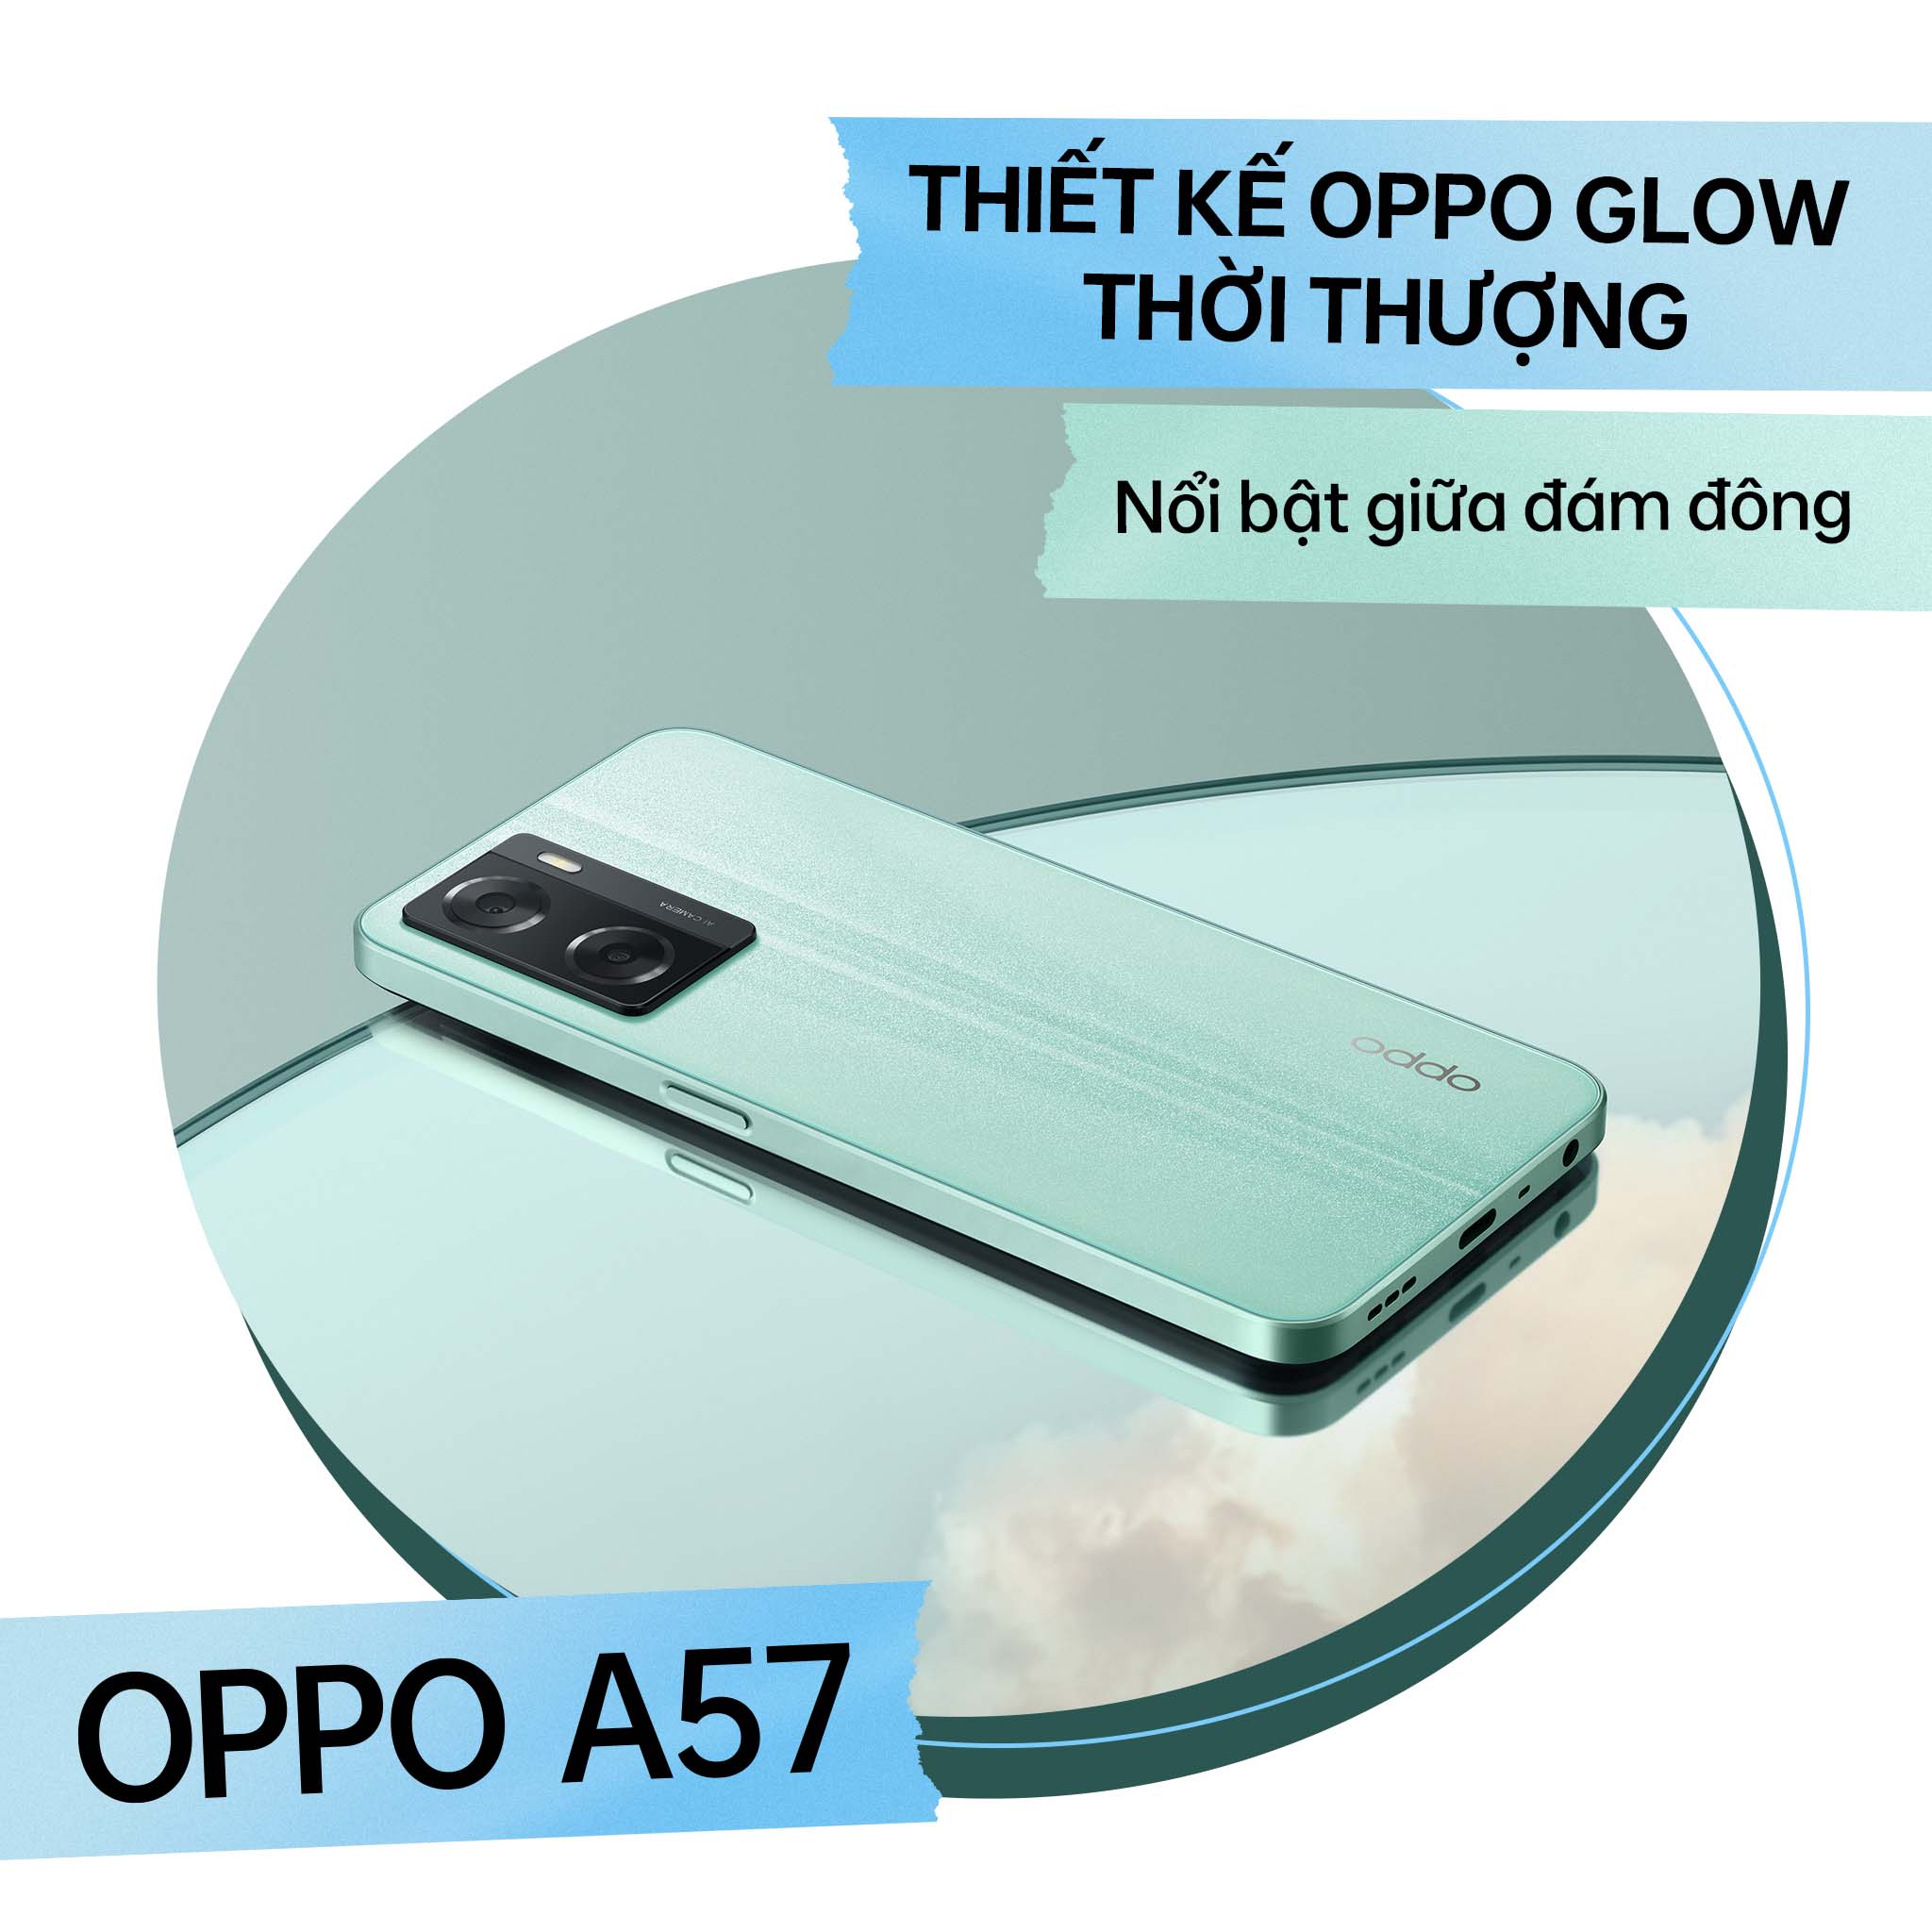 OPPO ra mắt A96 và A57: Thiết kế thời thượng, sạc nhanh nhất trong phân khúc